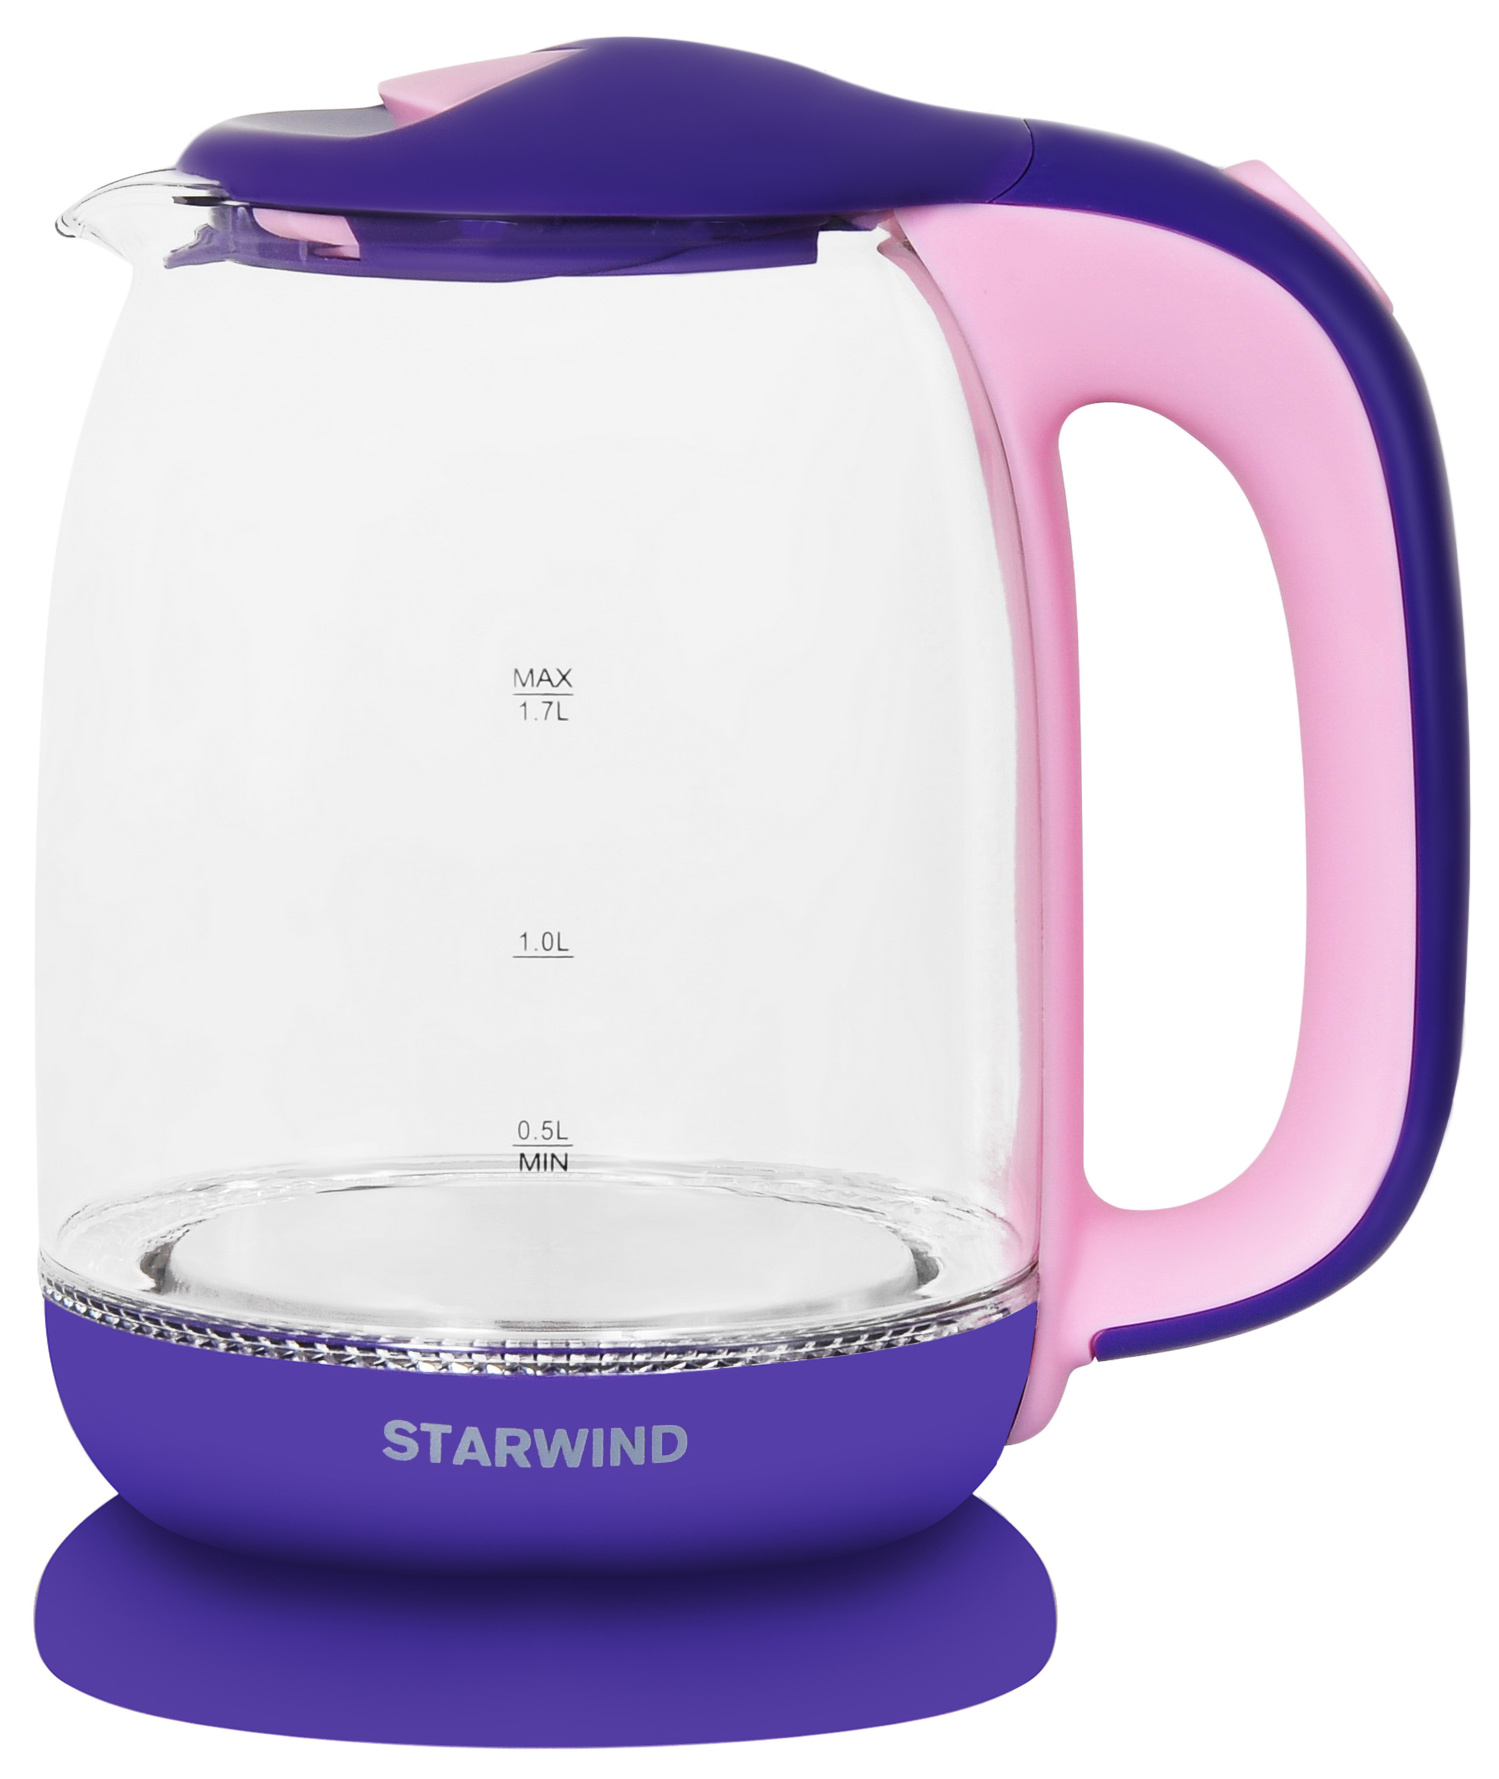 Чайник электрический STARWIND SKG1513 1.7 л фиолетовый, розовый, прозрачный чайник starwind skg1513 1 7л 2200вт фиолетовый розовый